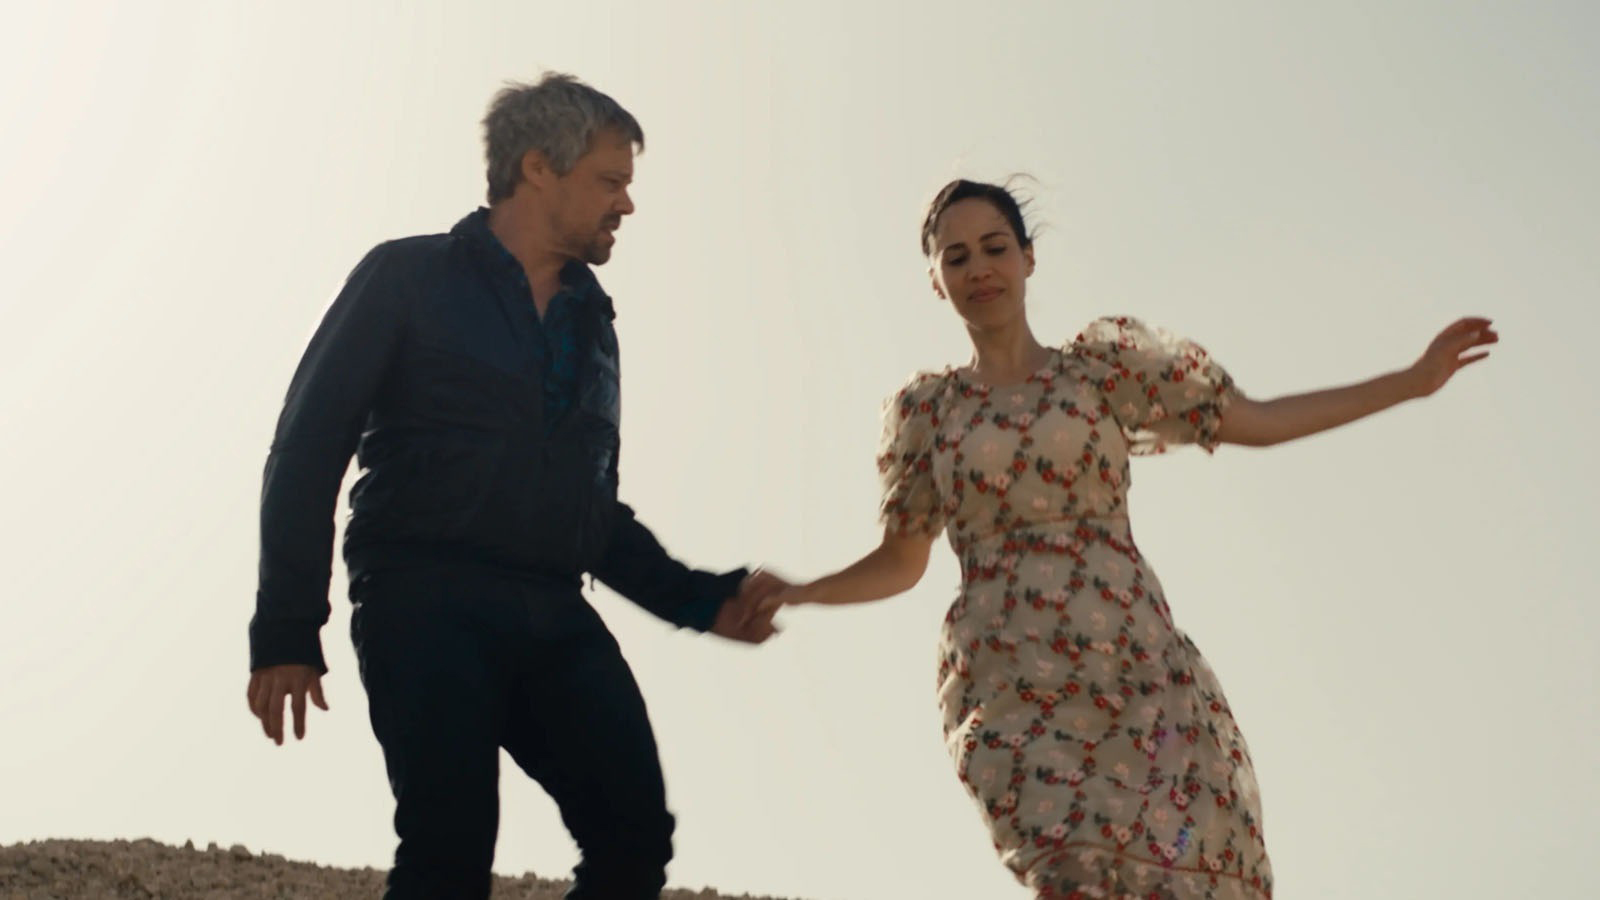 Cena do filme Ahed's Knee mostra um casal de mãos dadas, descendo uma colina. Ele usa roupas pretas e ela usa um vestido claro.